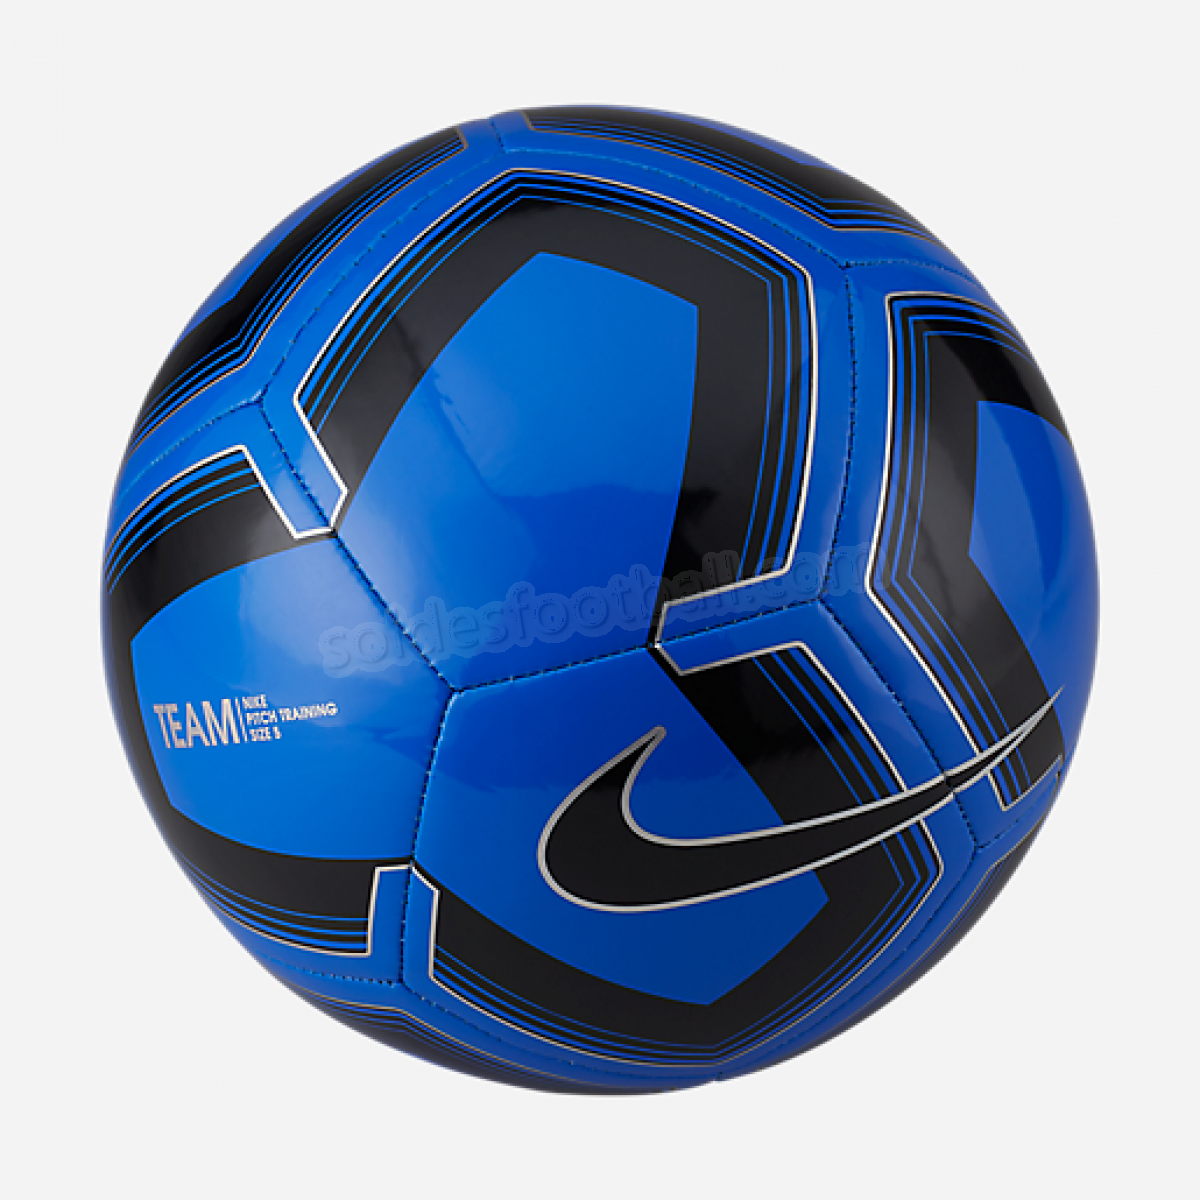 Ballon de football PITCH-NIKE en solde - Ballon de football PITCH-NIKE en solde